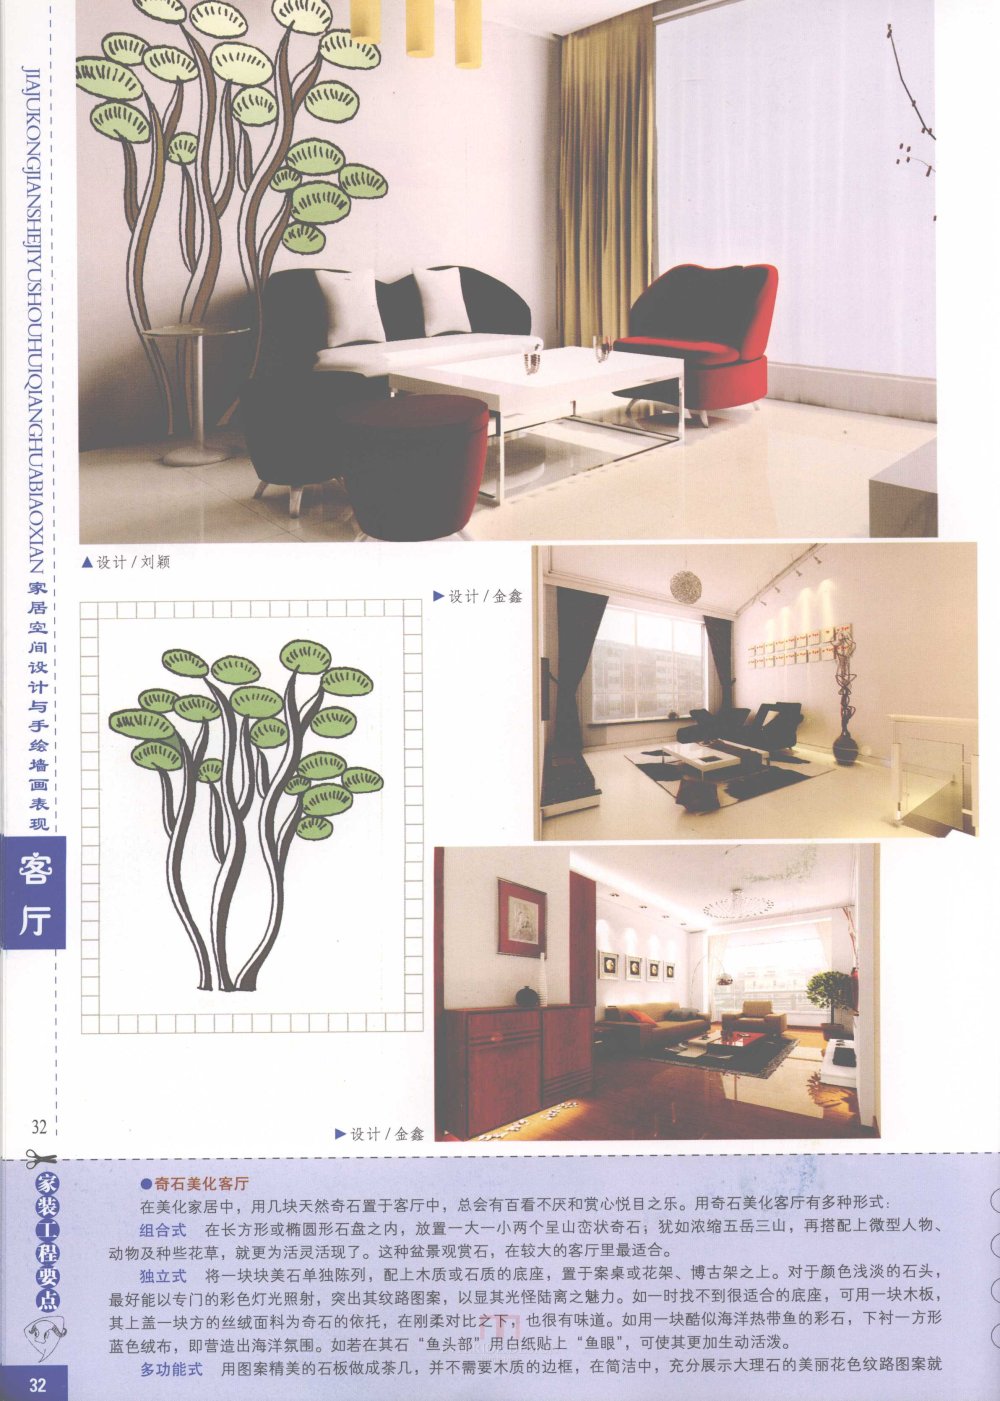 家居空间设计与手绘墙画表现客厅_家居空间设计与手绘墙画表现客厅-34.jpg